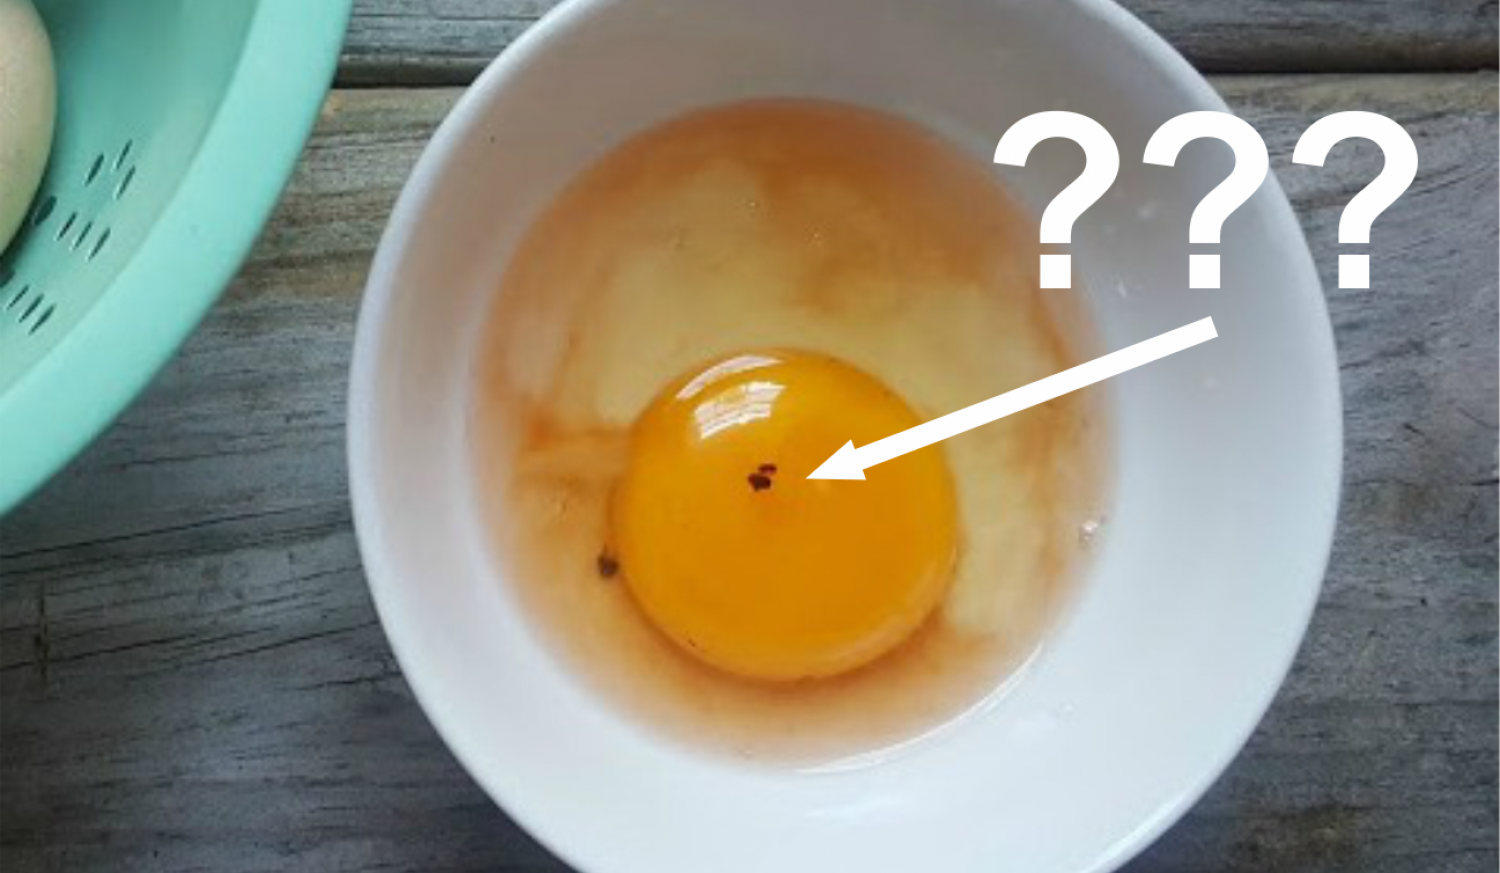 Mik ezek a vérszerű foltok a tojásban? Meg szabad enni az ilyen tojást?